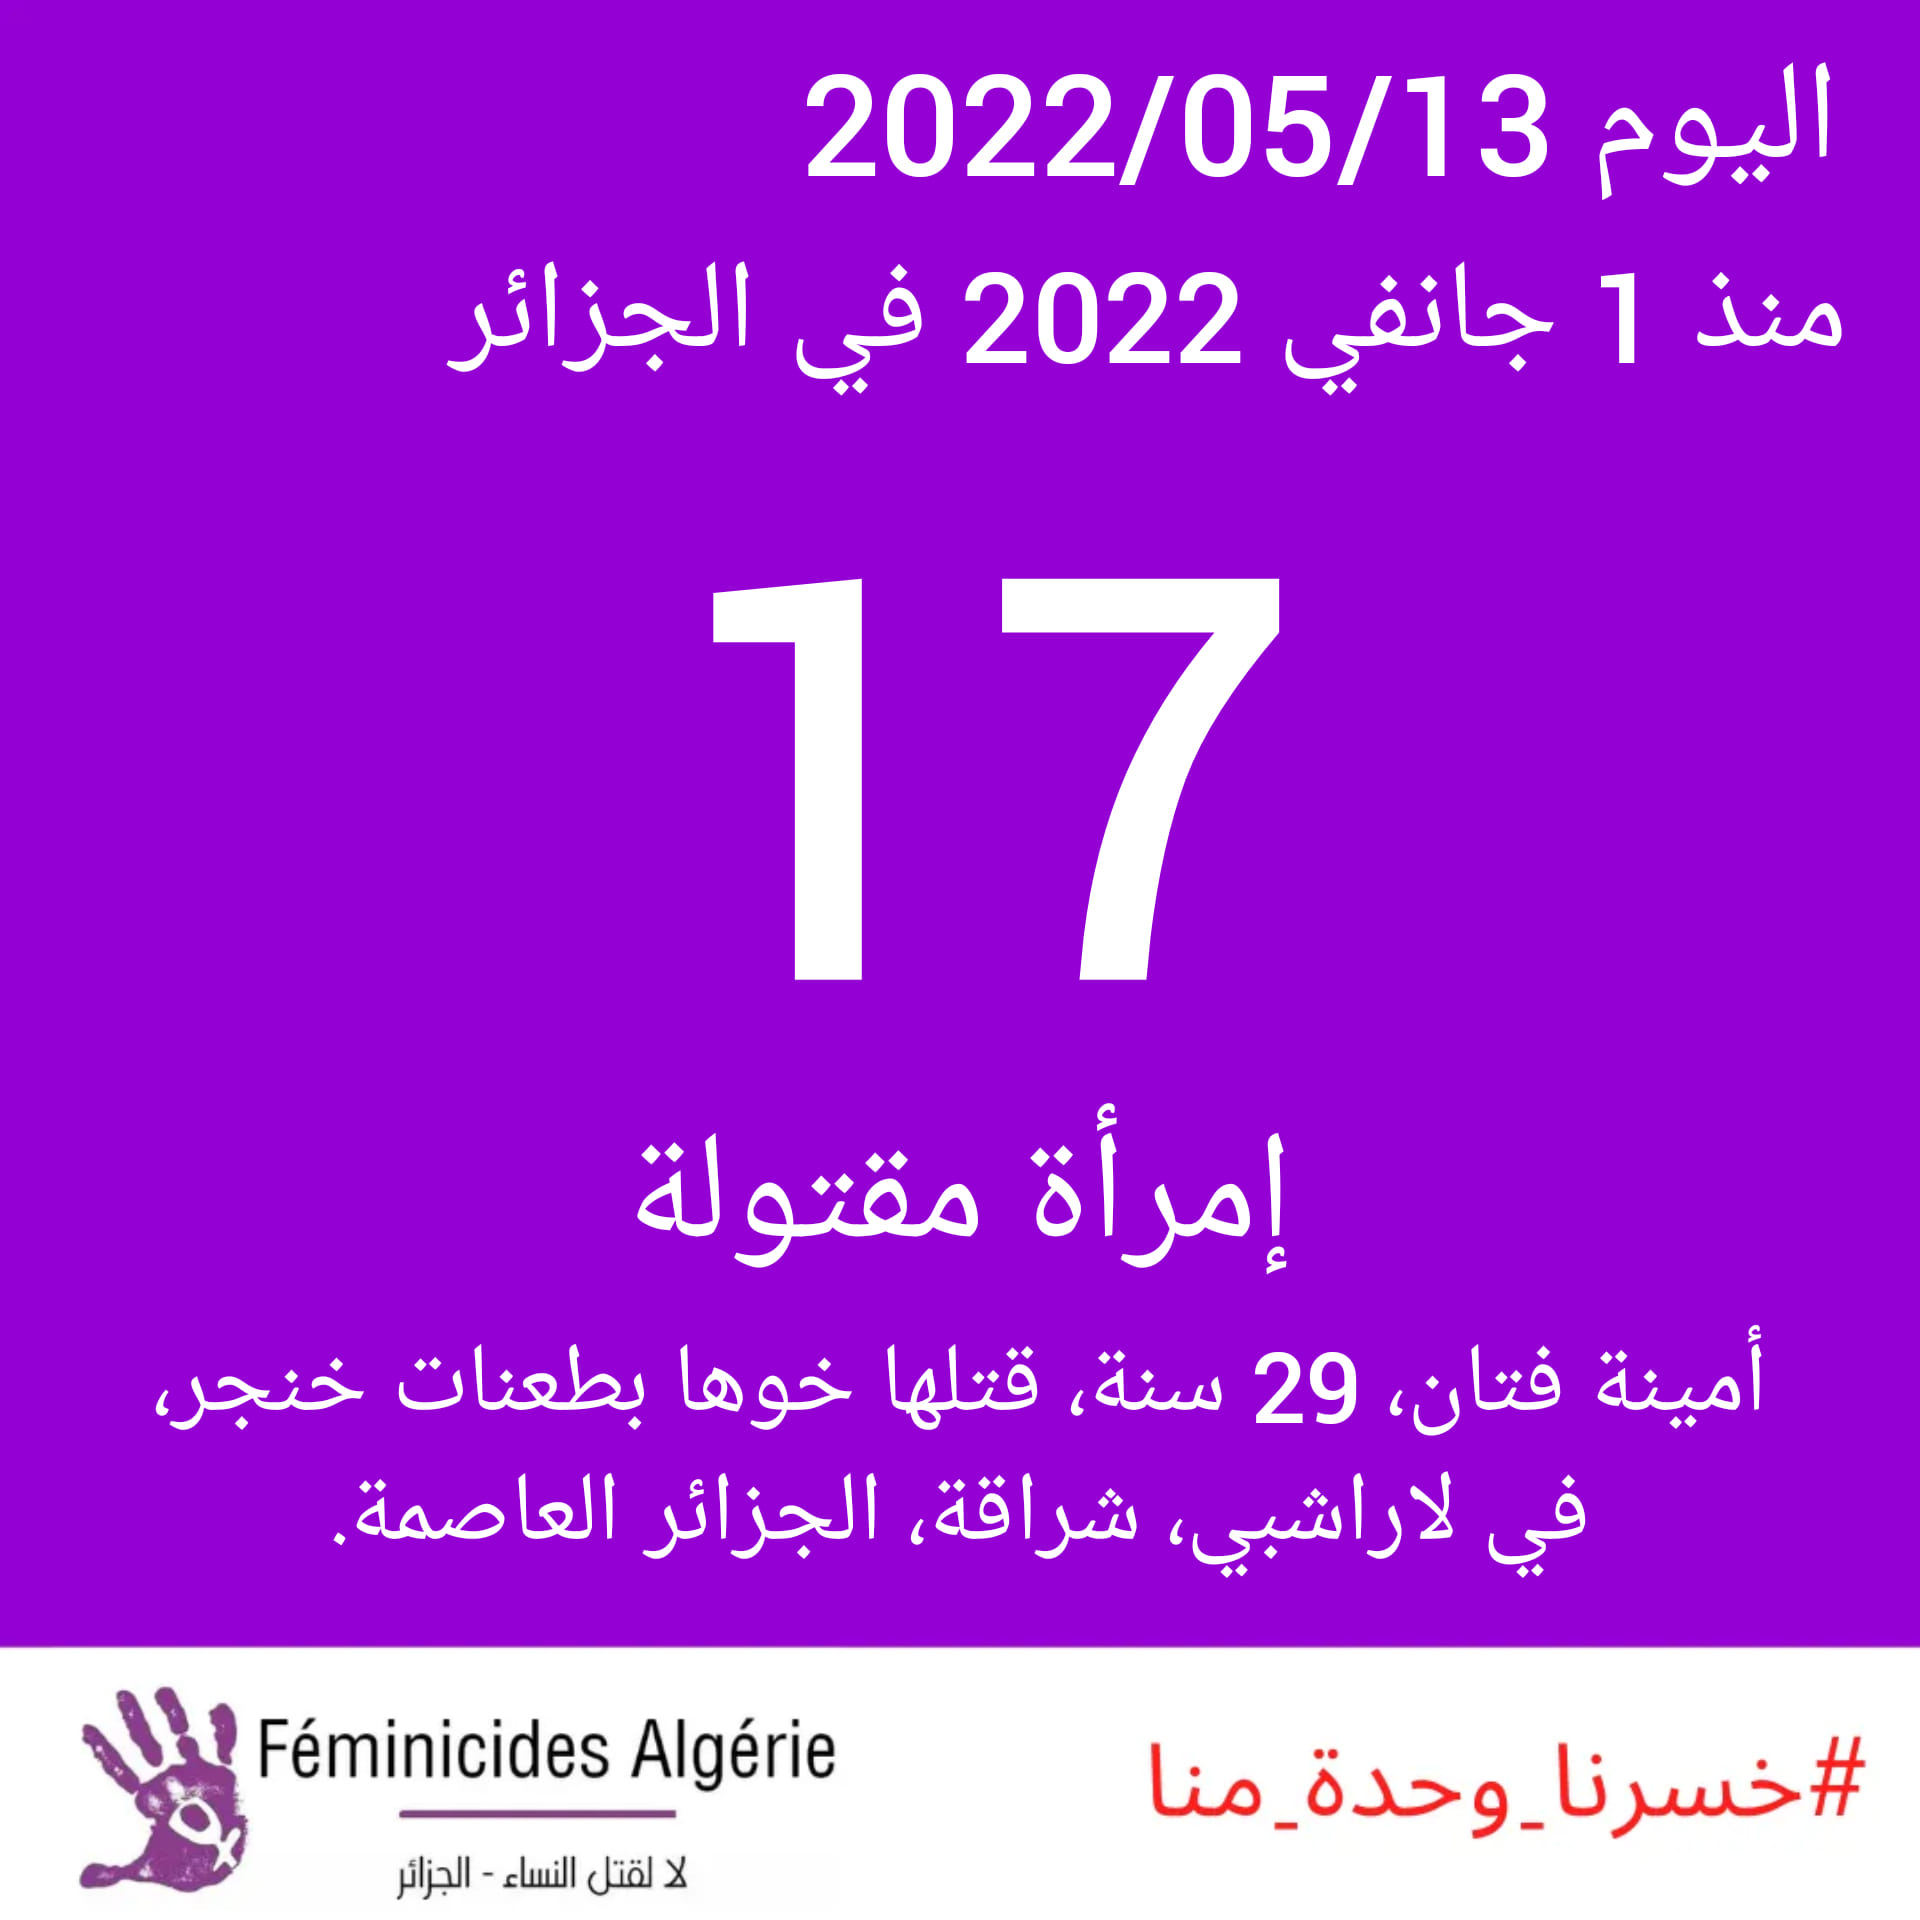 Féminicides Algérie